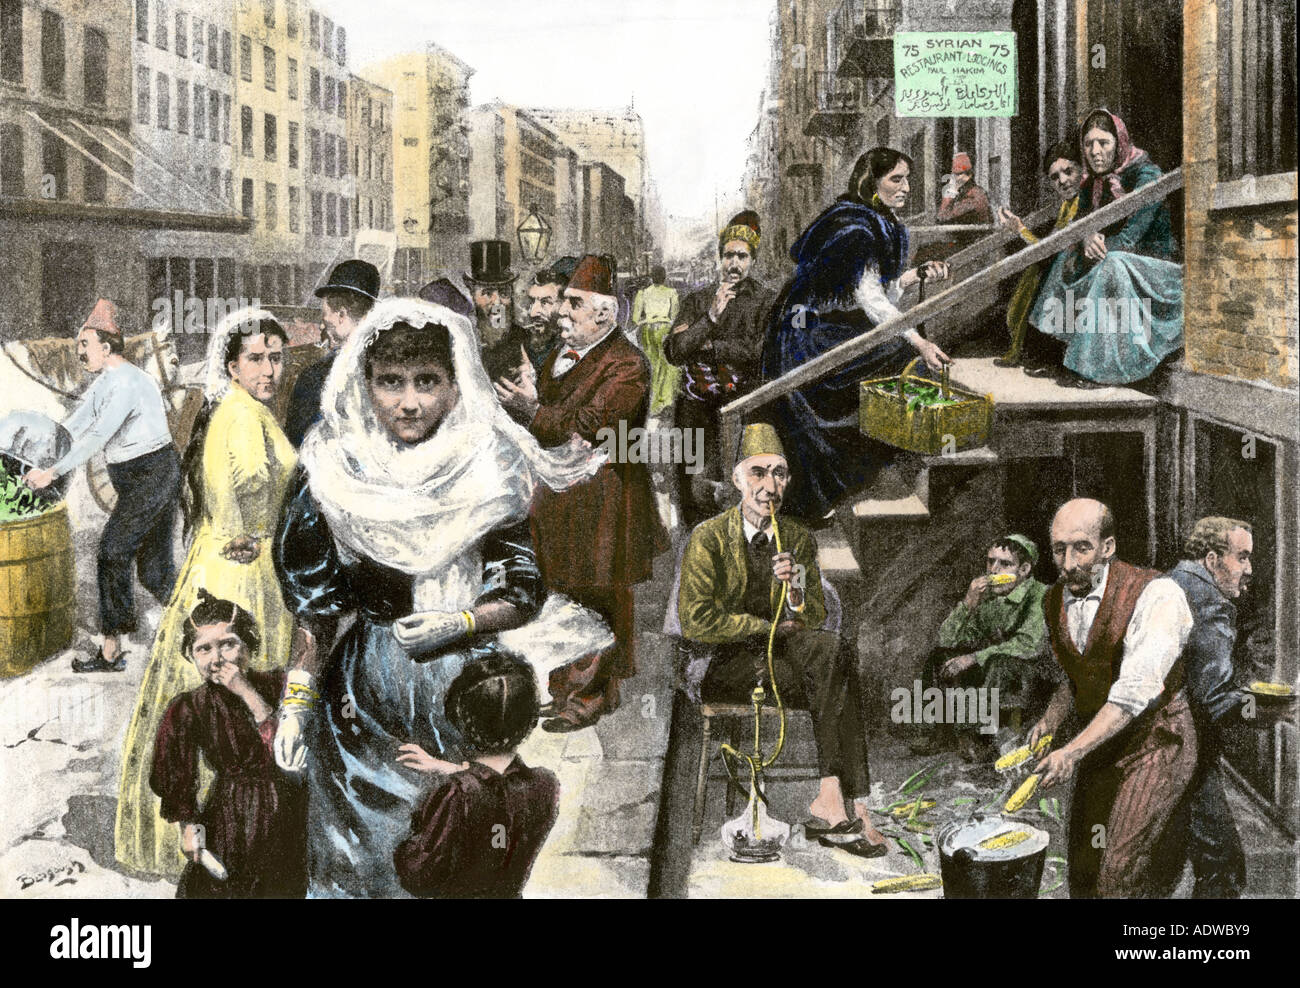 Syrische immigrant Nachbarschaft auf der Washington Street in New York City 1890. Handcolorierte halftone einer Abbildung Stockfoto